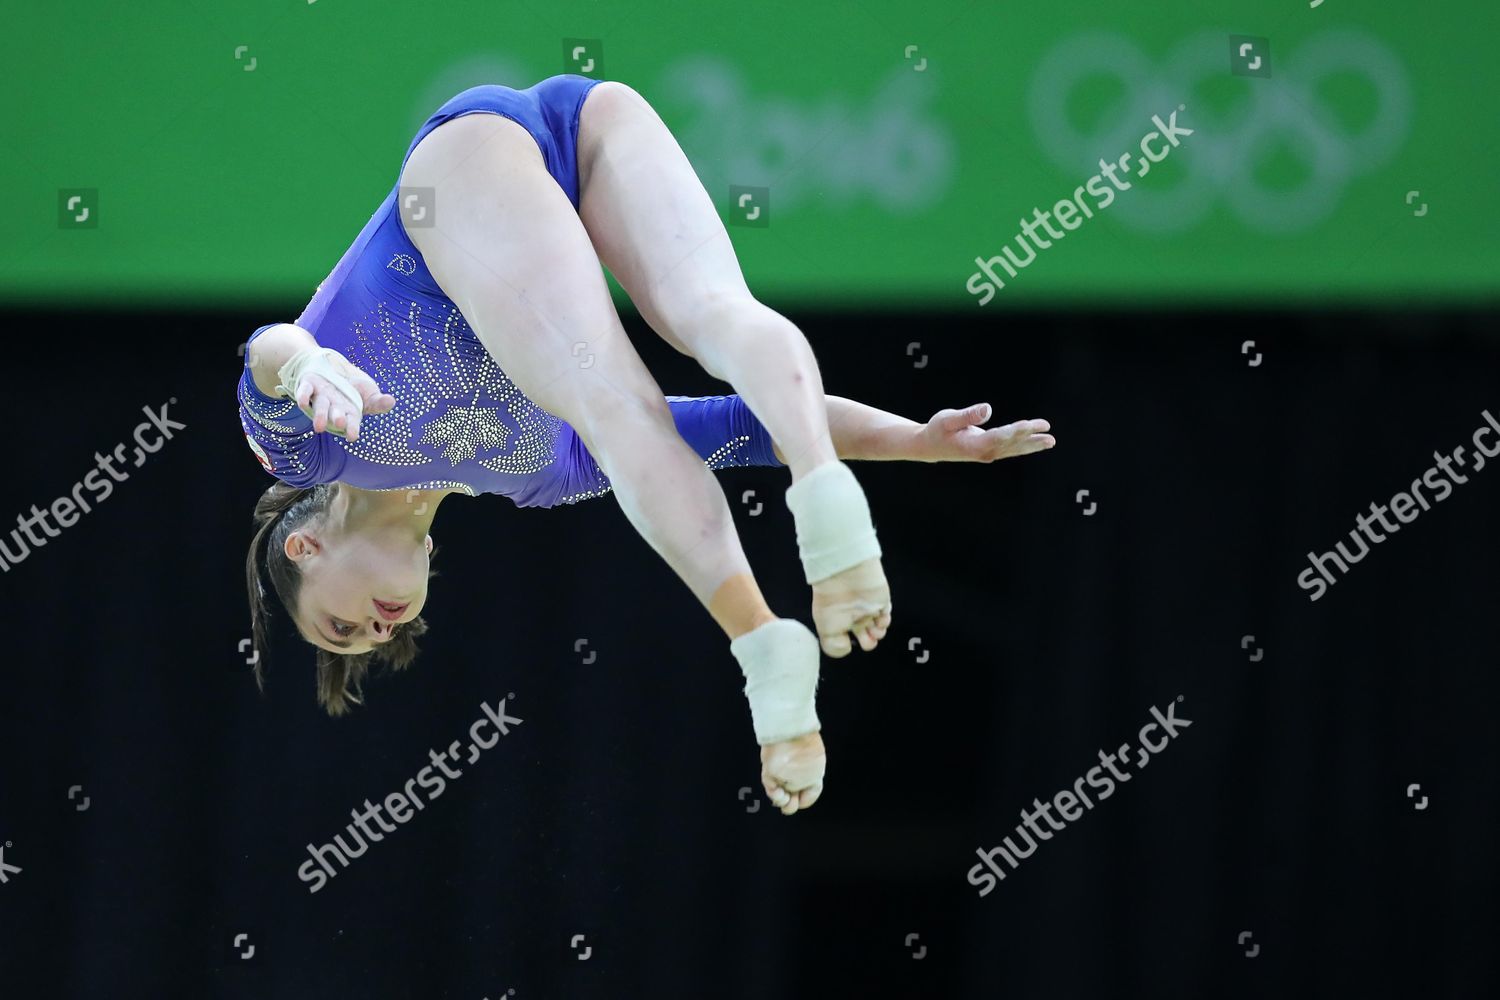 Canadian Artistic Gymnast Isabela Onyshk